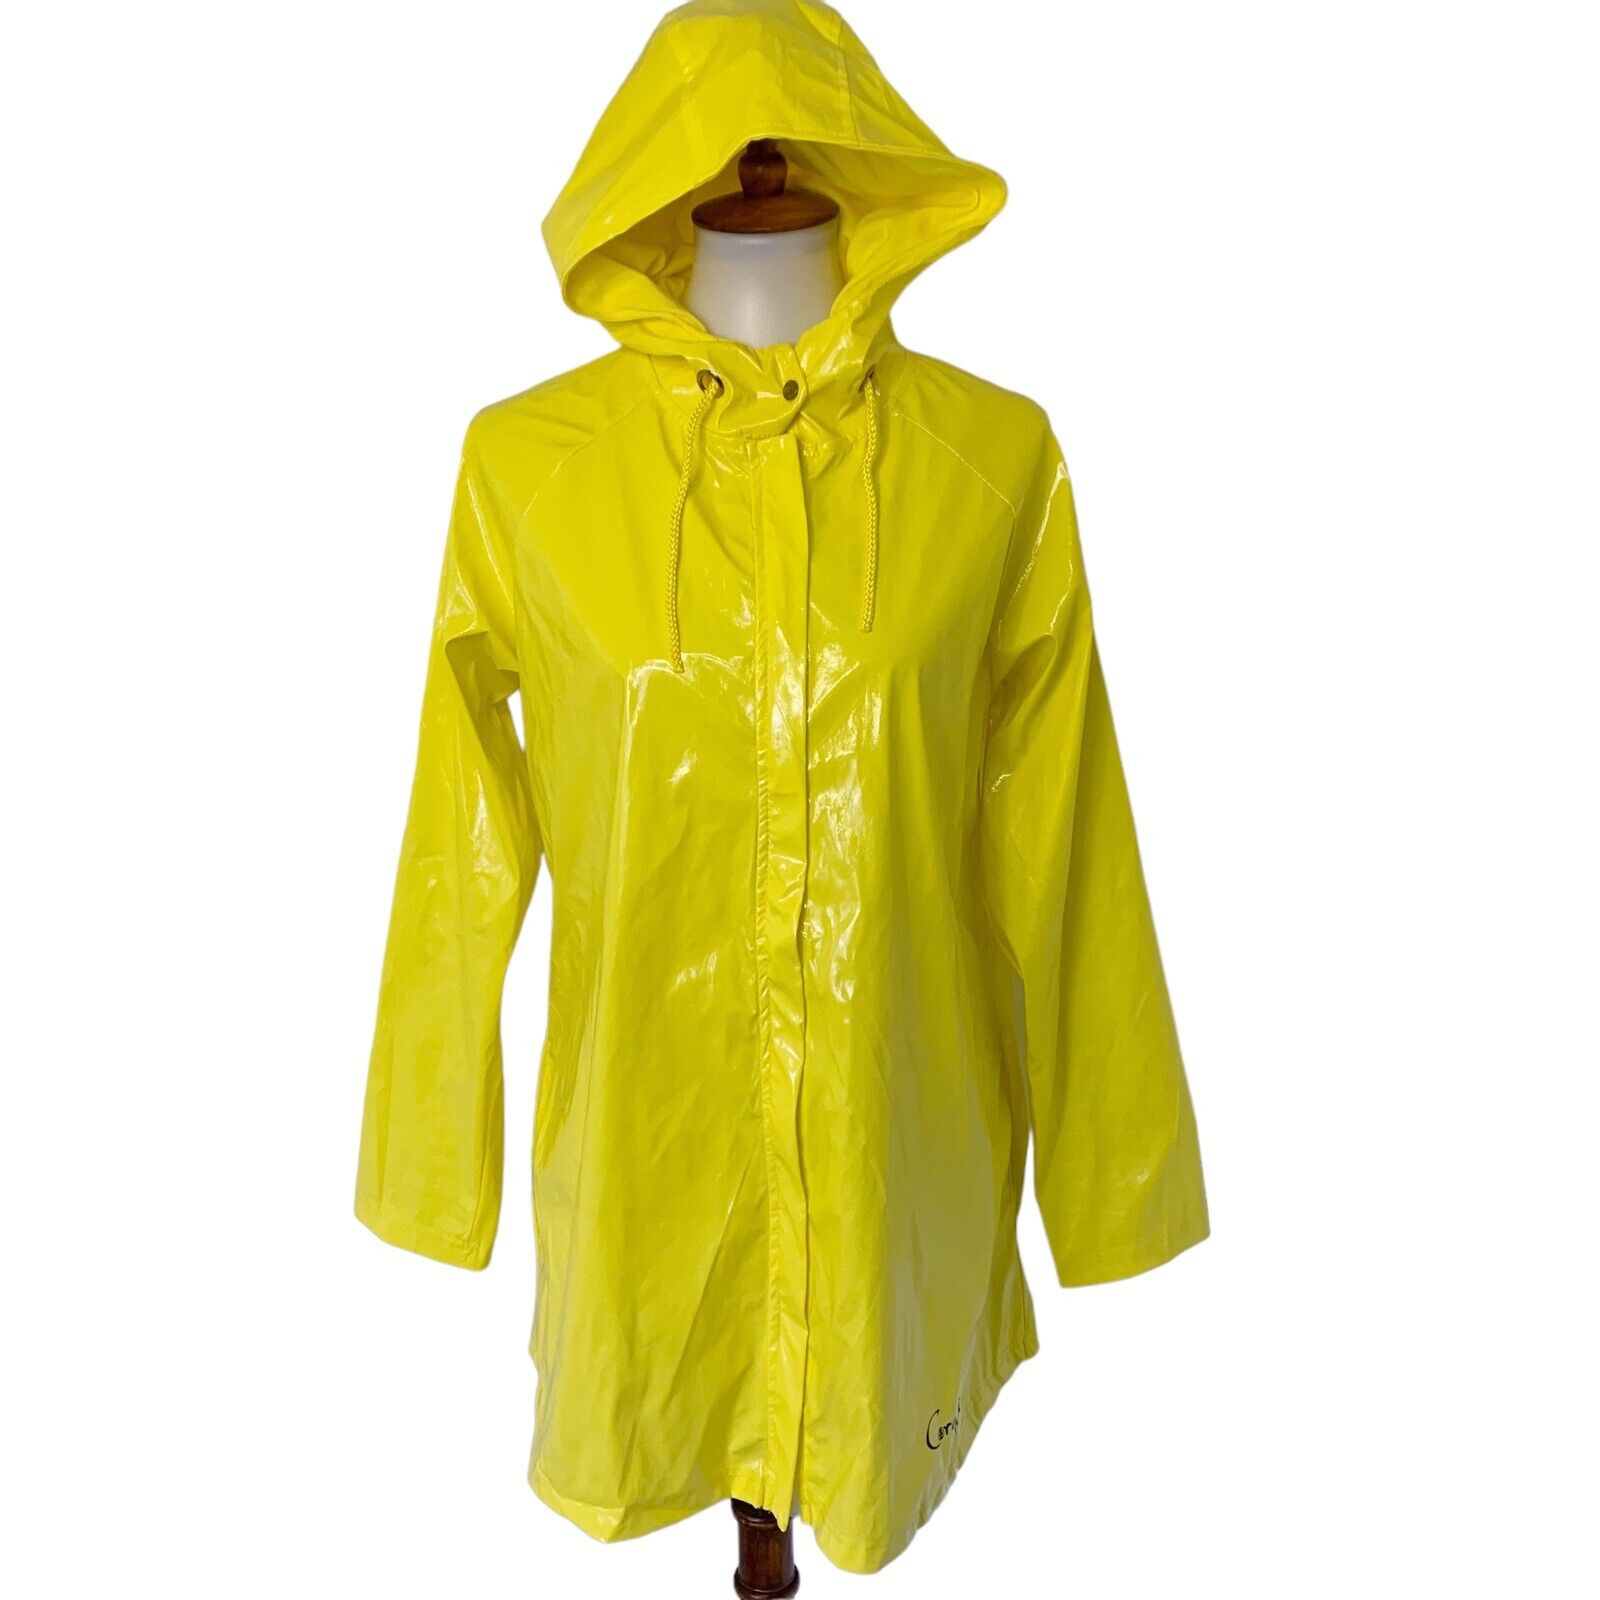 Coraline Raincoat Rain Jacket Costume Yellow Women's Size M Medium Spirit 2021